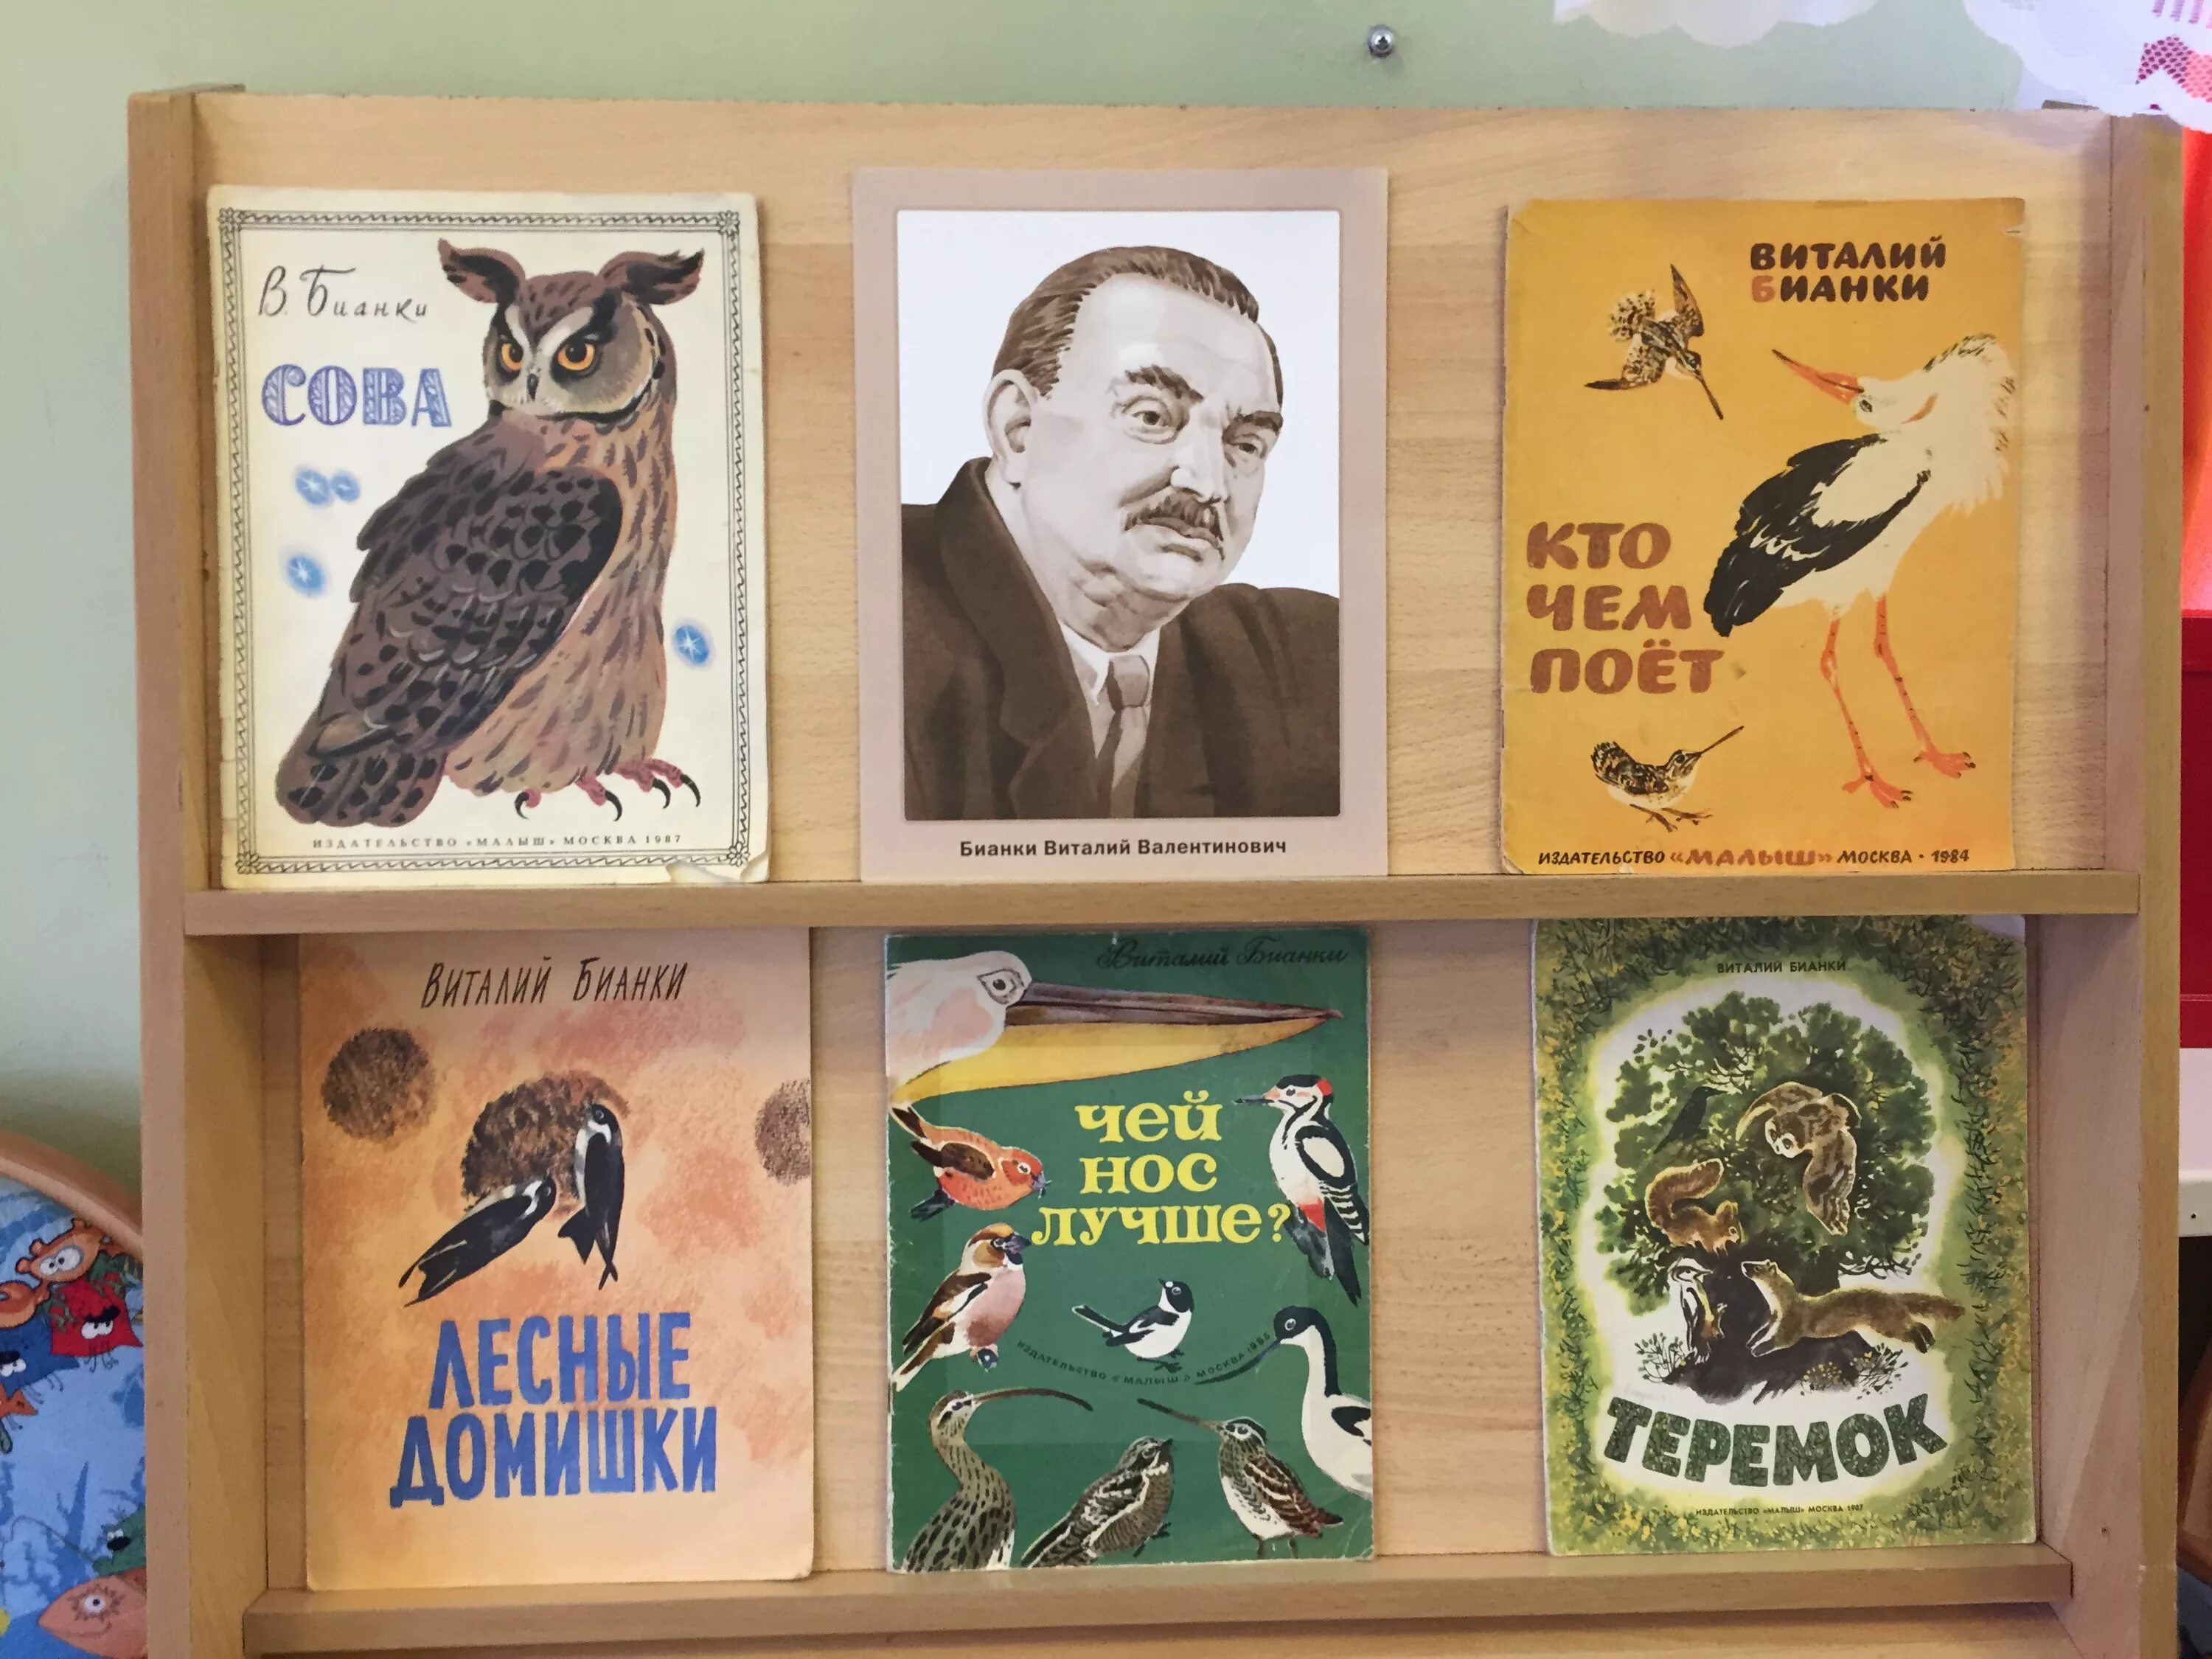 Выставка книг Виталия Бианки. Рассказы бианки картинки